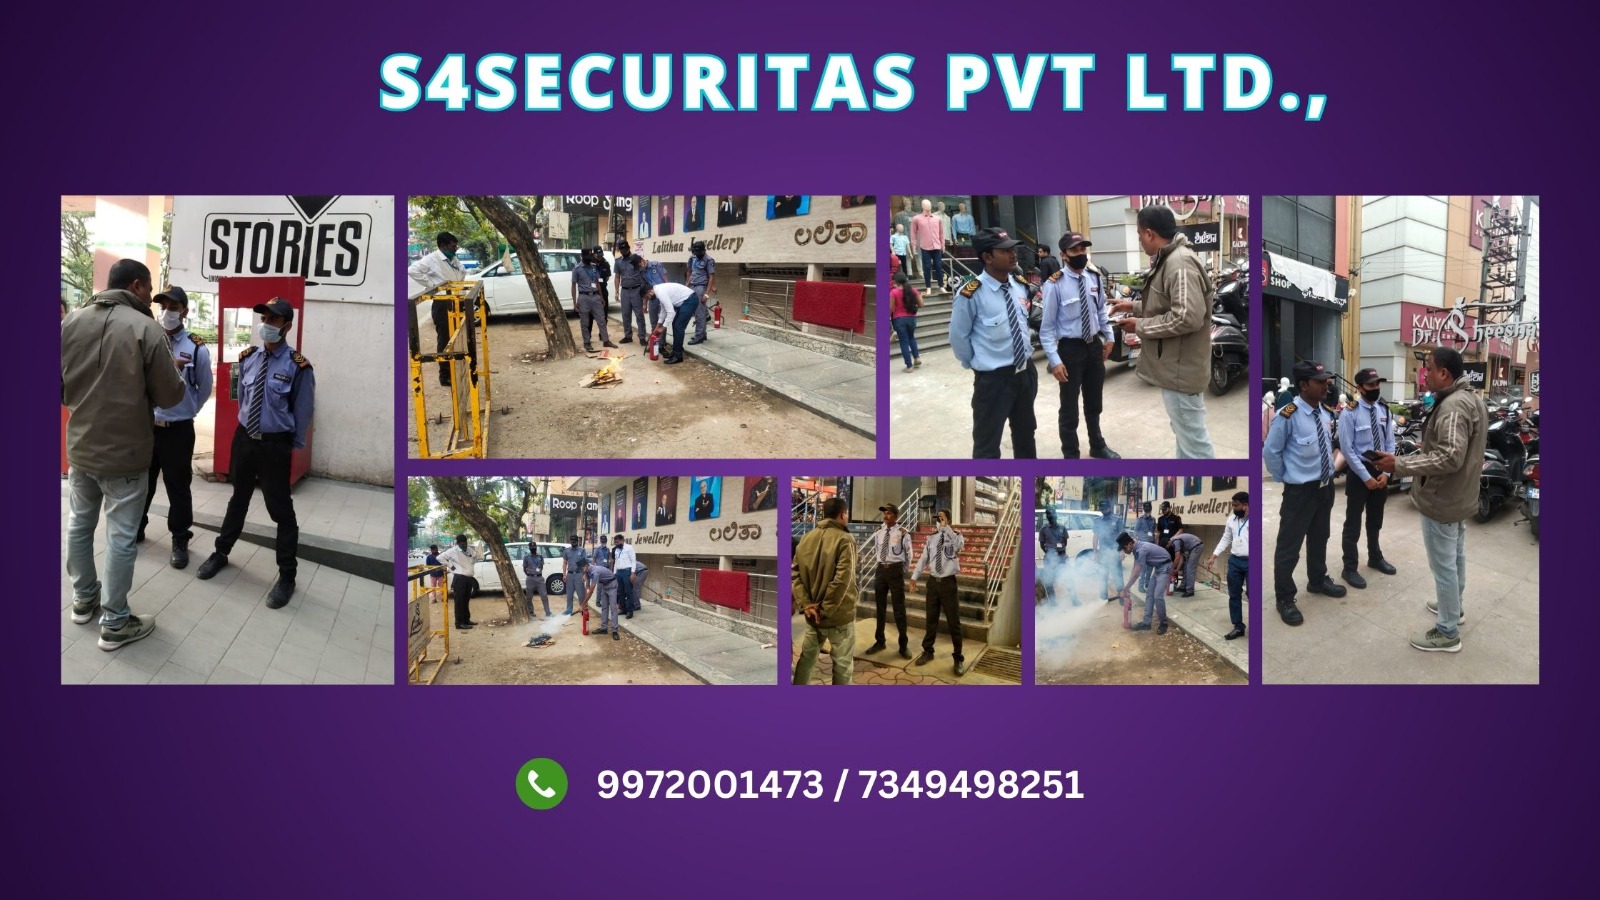 S4SECURITAS PVT LTD - 